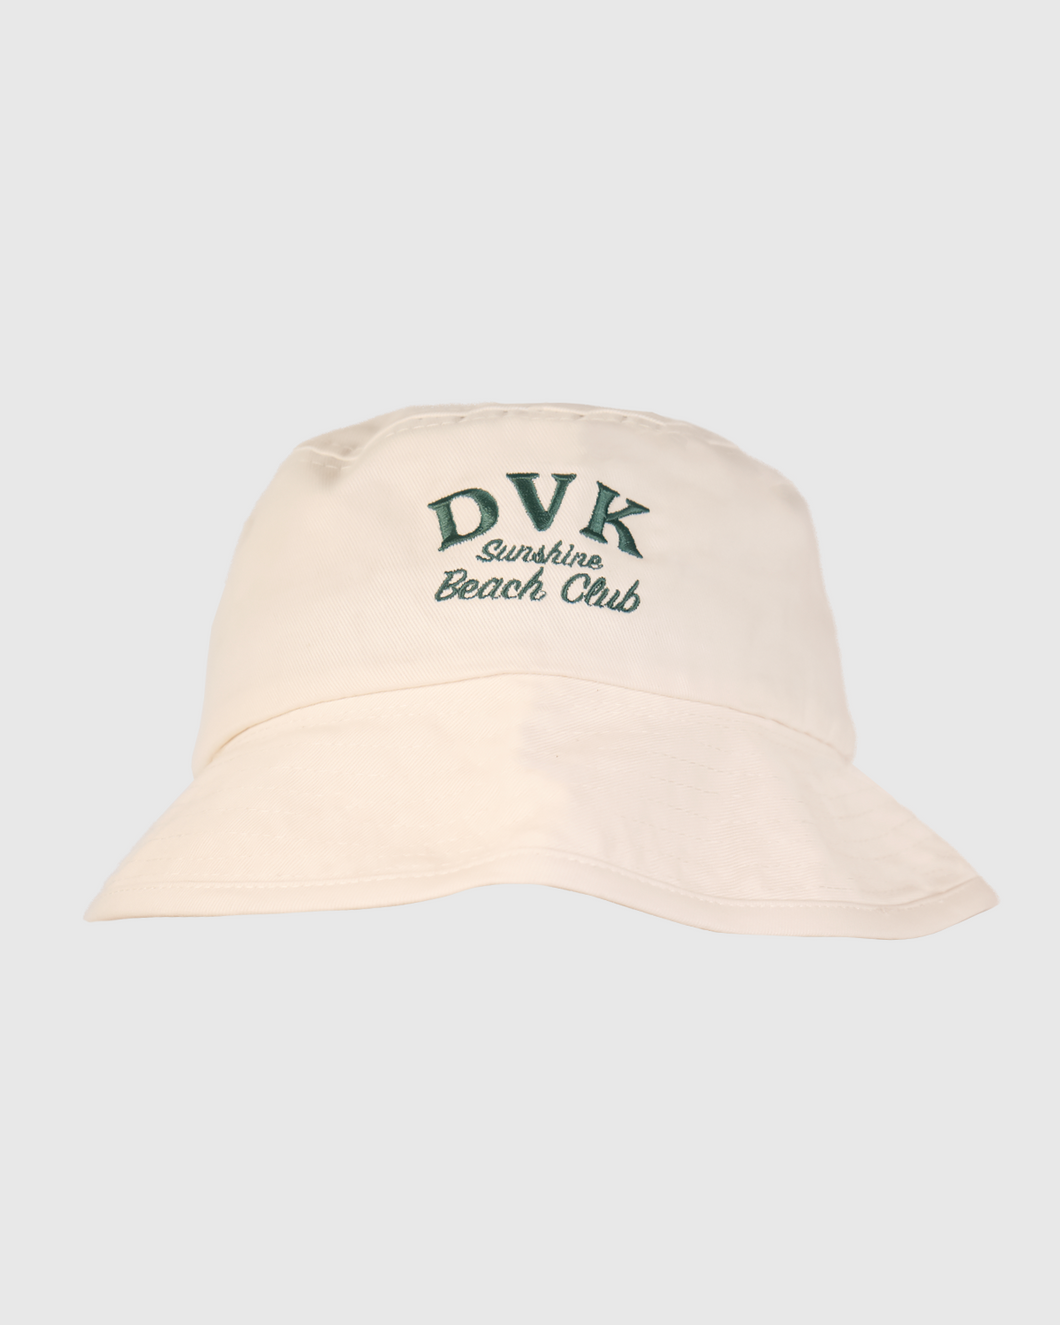 Gorra para Mujer DVK BUCKET SUNSHINE BEACH CLUB HUE